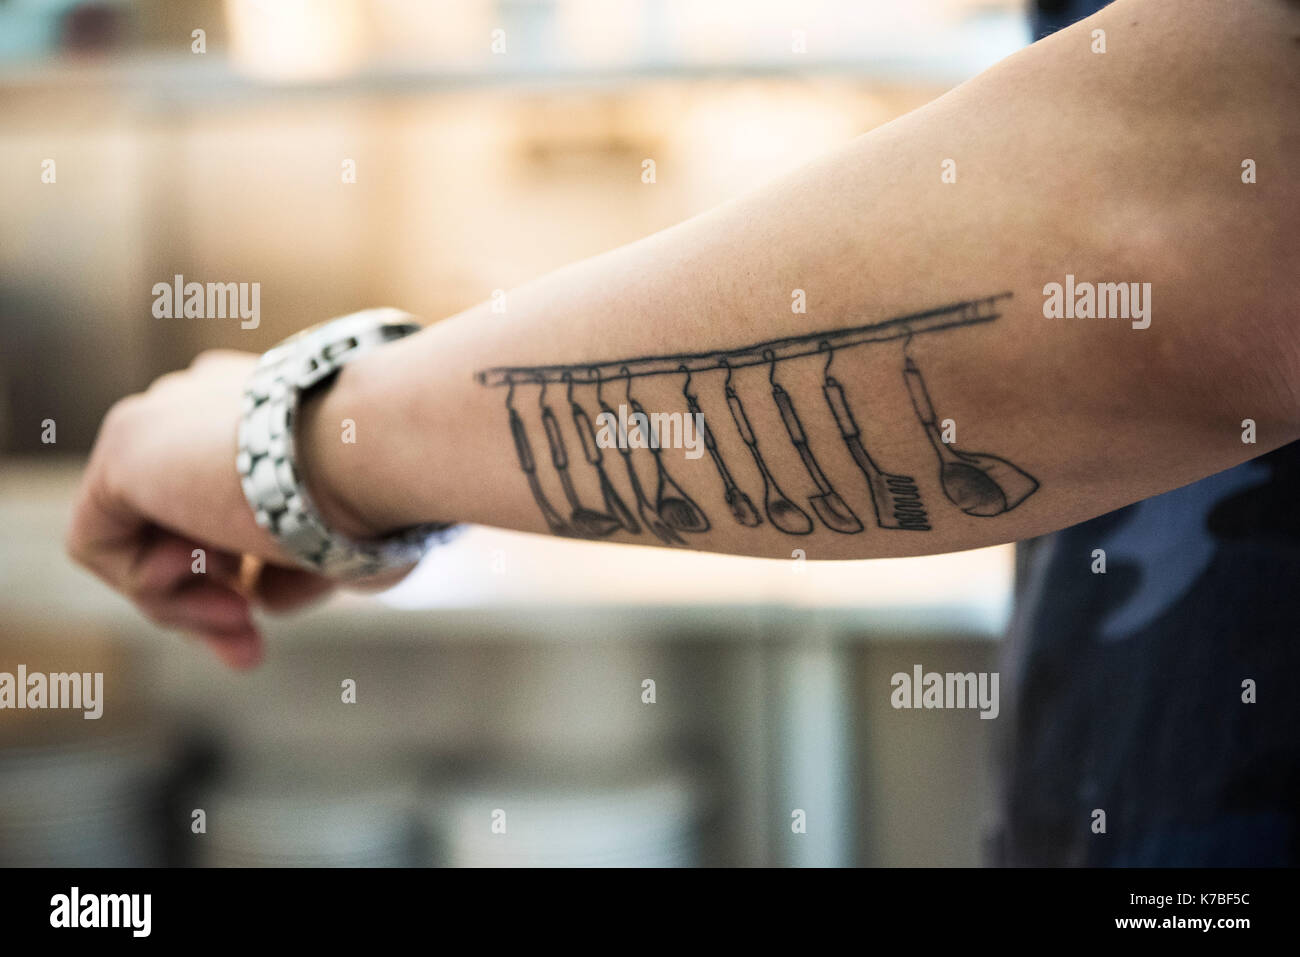 Küchengeräte tattooed auf Arm Stockfoto